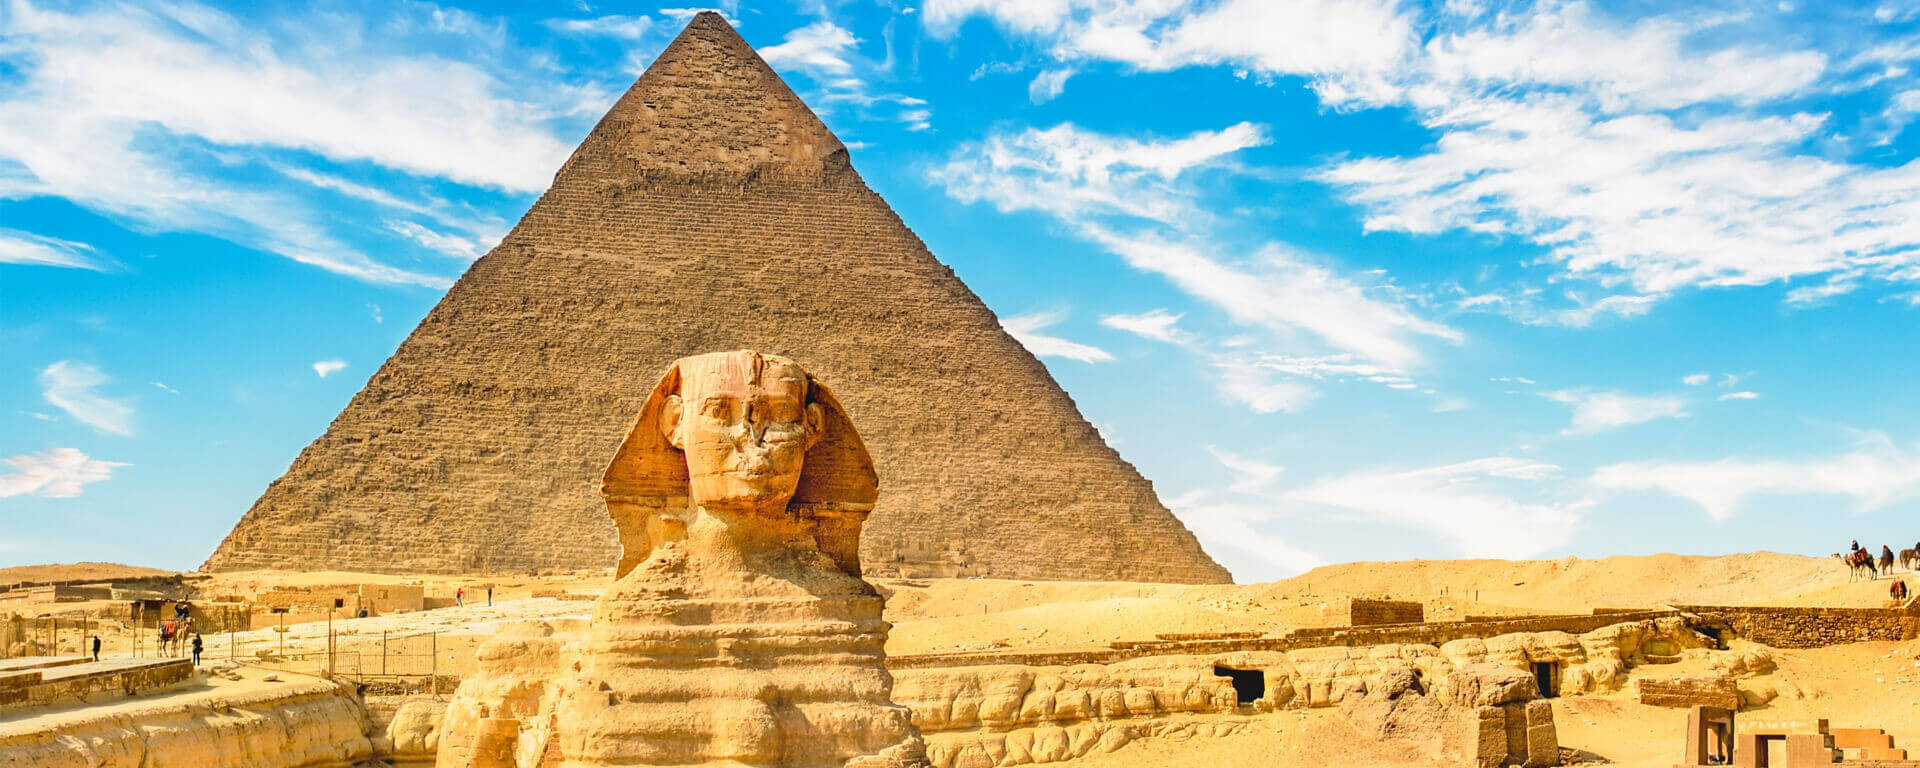 Descubra as melhores atrações turísticas do Cairo